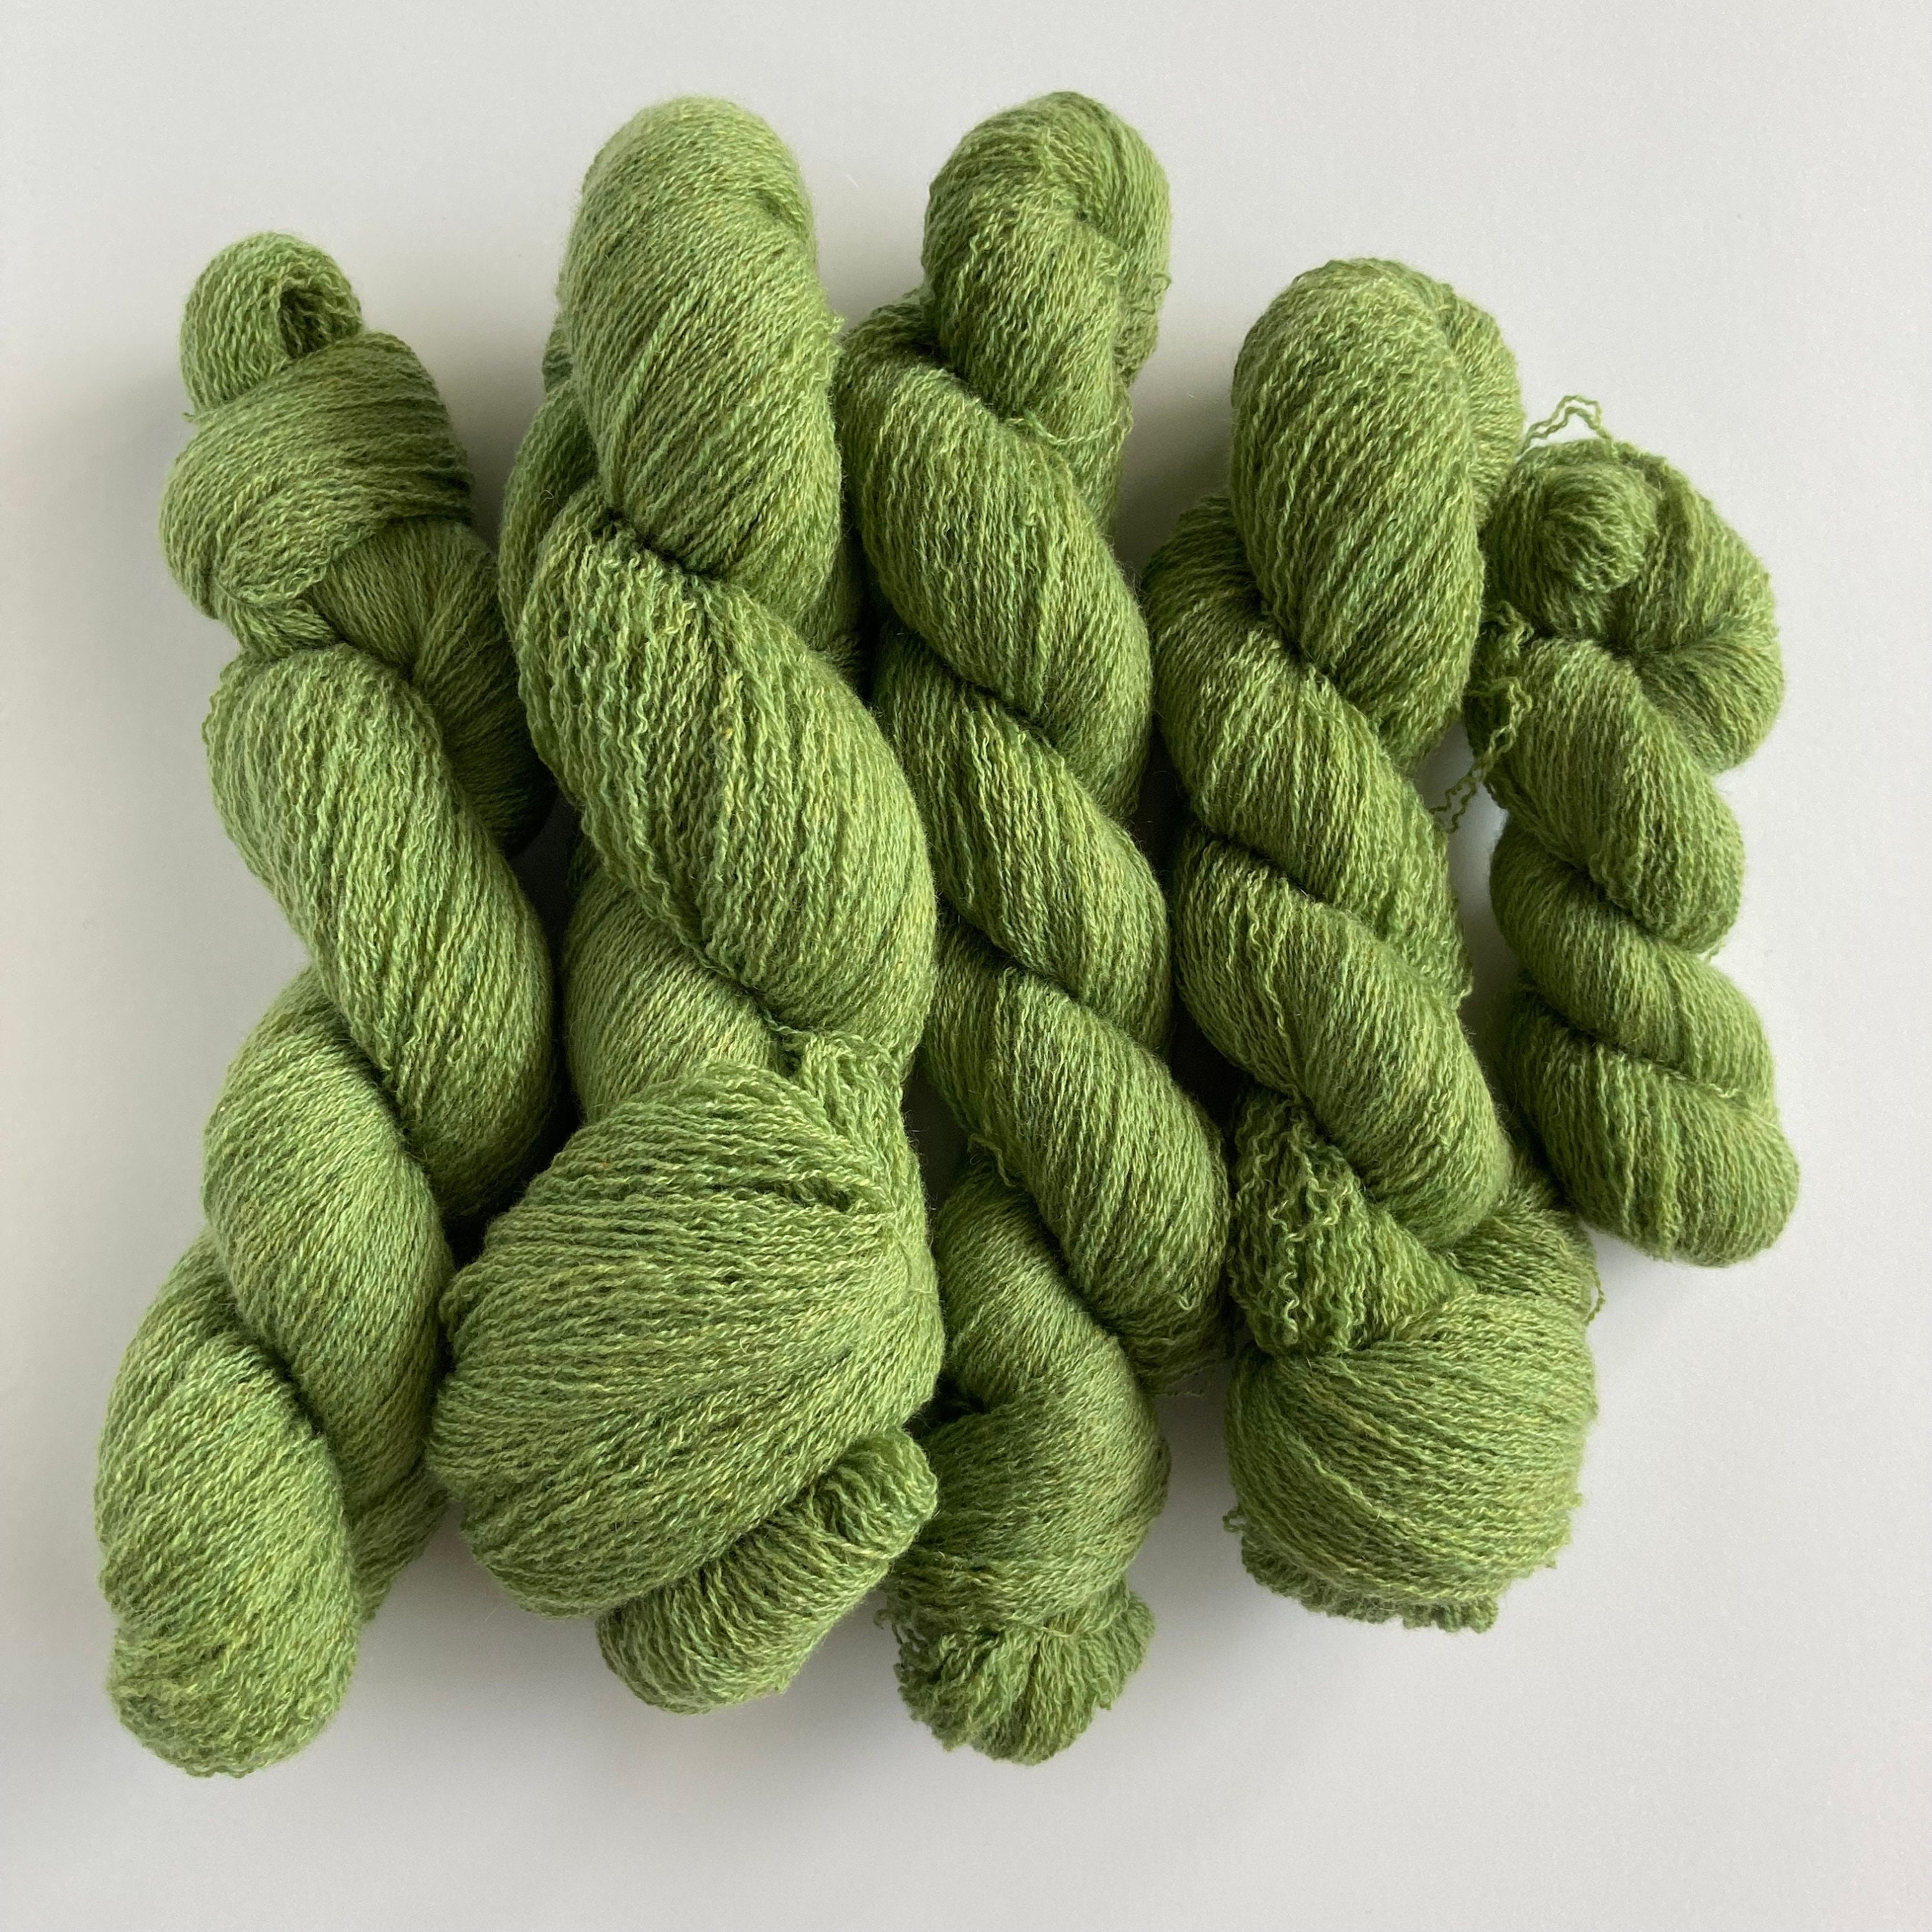 Green Viscose Yarn Rayon Thread Vegan Silk Yarn Lace Weight 